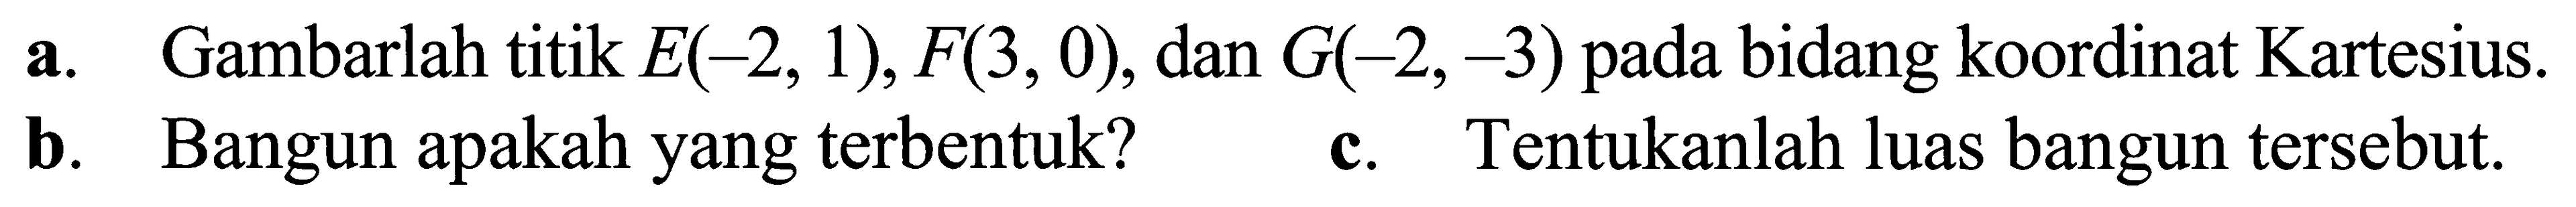 a. Gambarlah titik E(-2, 1), F(3, 0), dan G(-2,-3) pada bidang koordinat Kartesius. b. Bangun apakah yang terbentuk? c. Tentukanlah luas bangun tersebut.